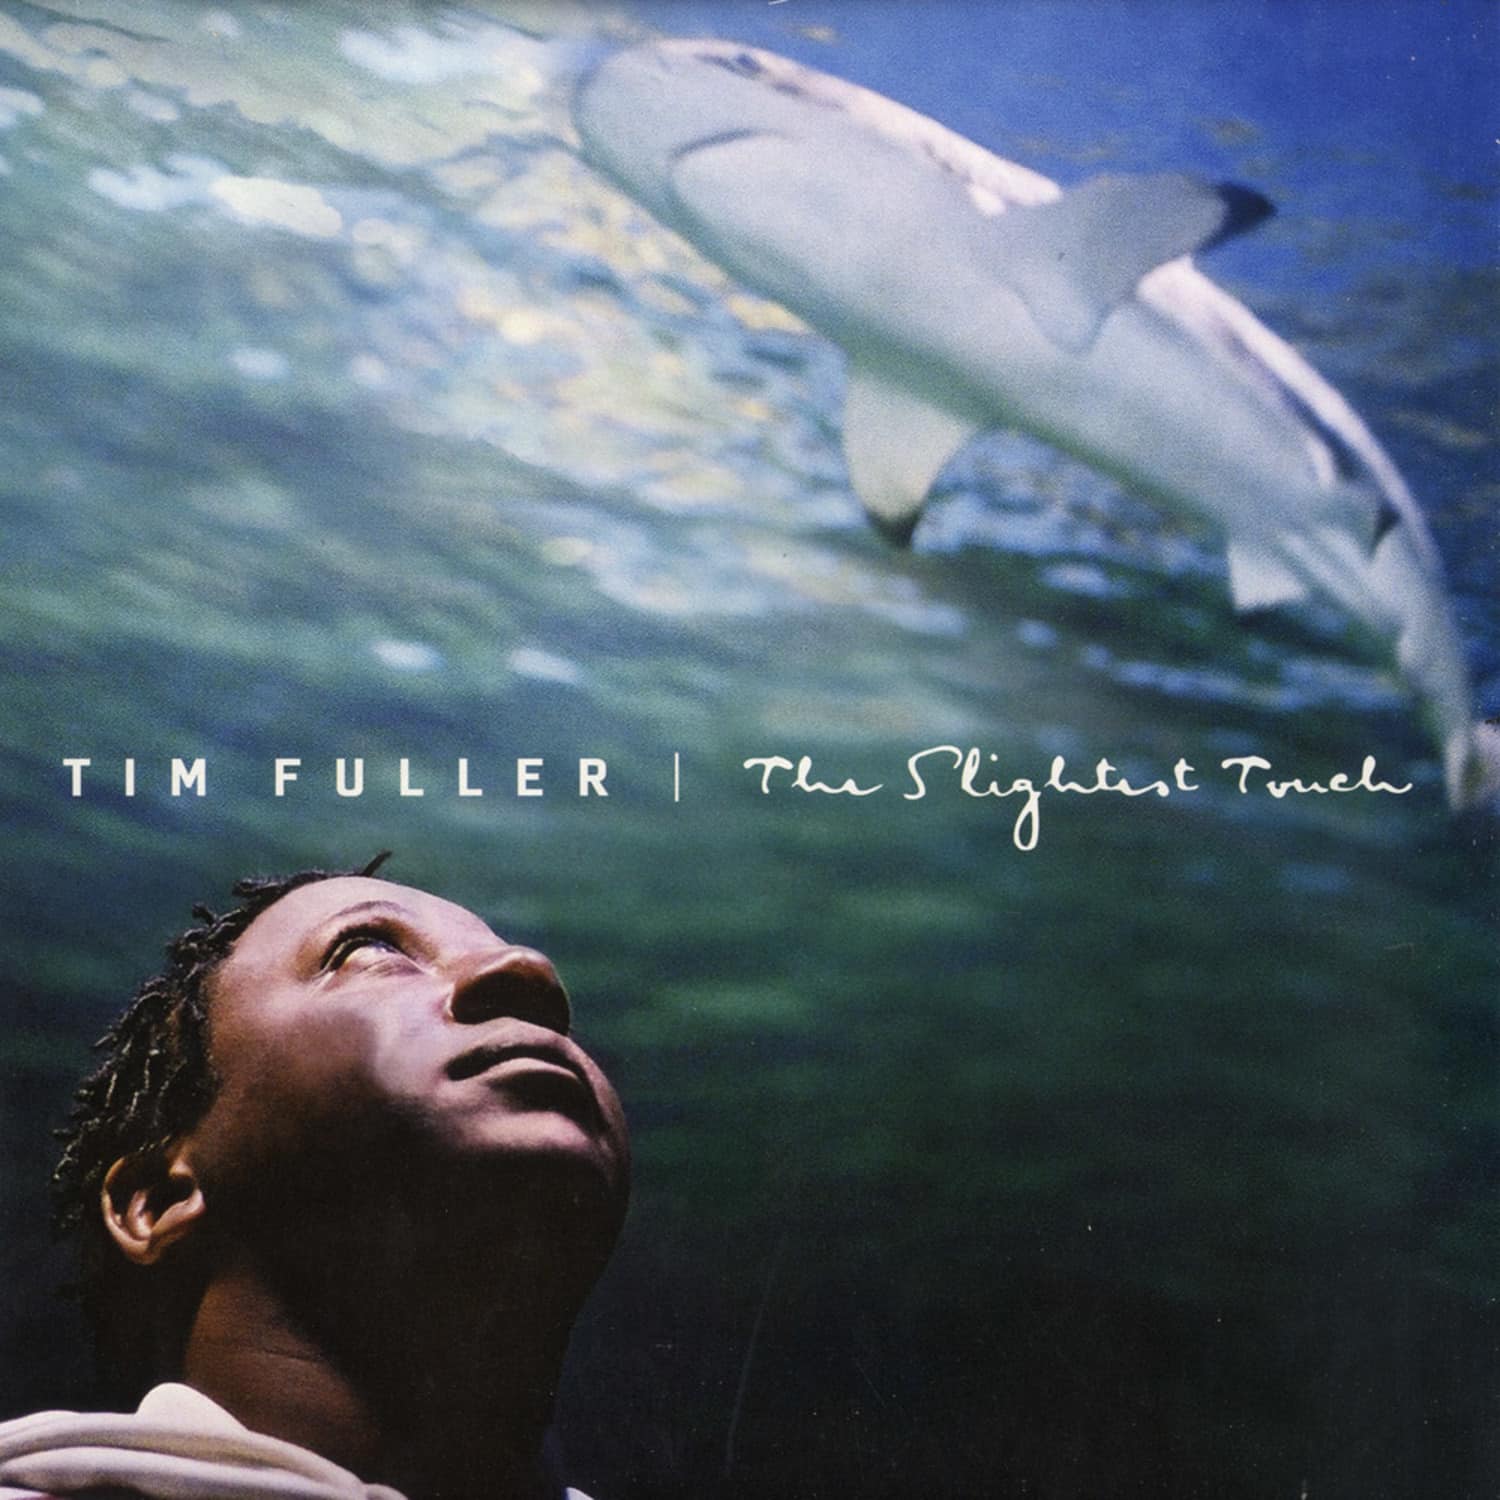 Tim Fuller - THE SLIGHTEST TOUCH 